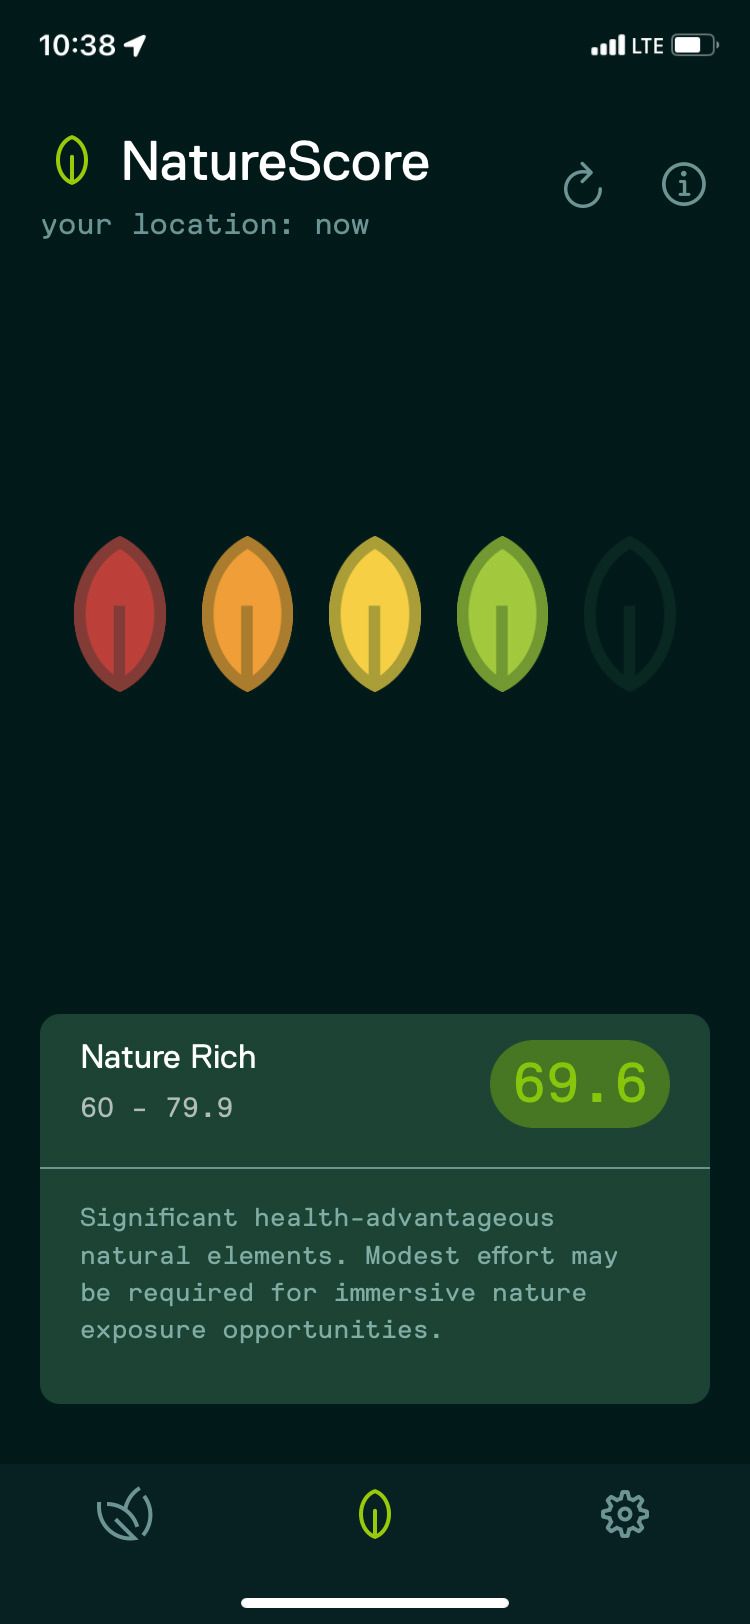 NatureDose App NatureScore Nature Rich